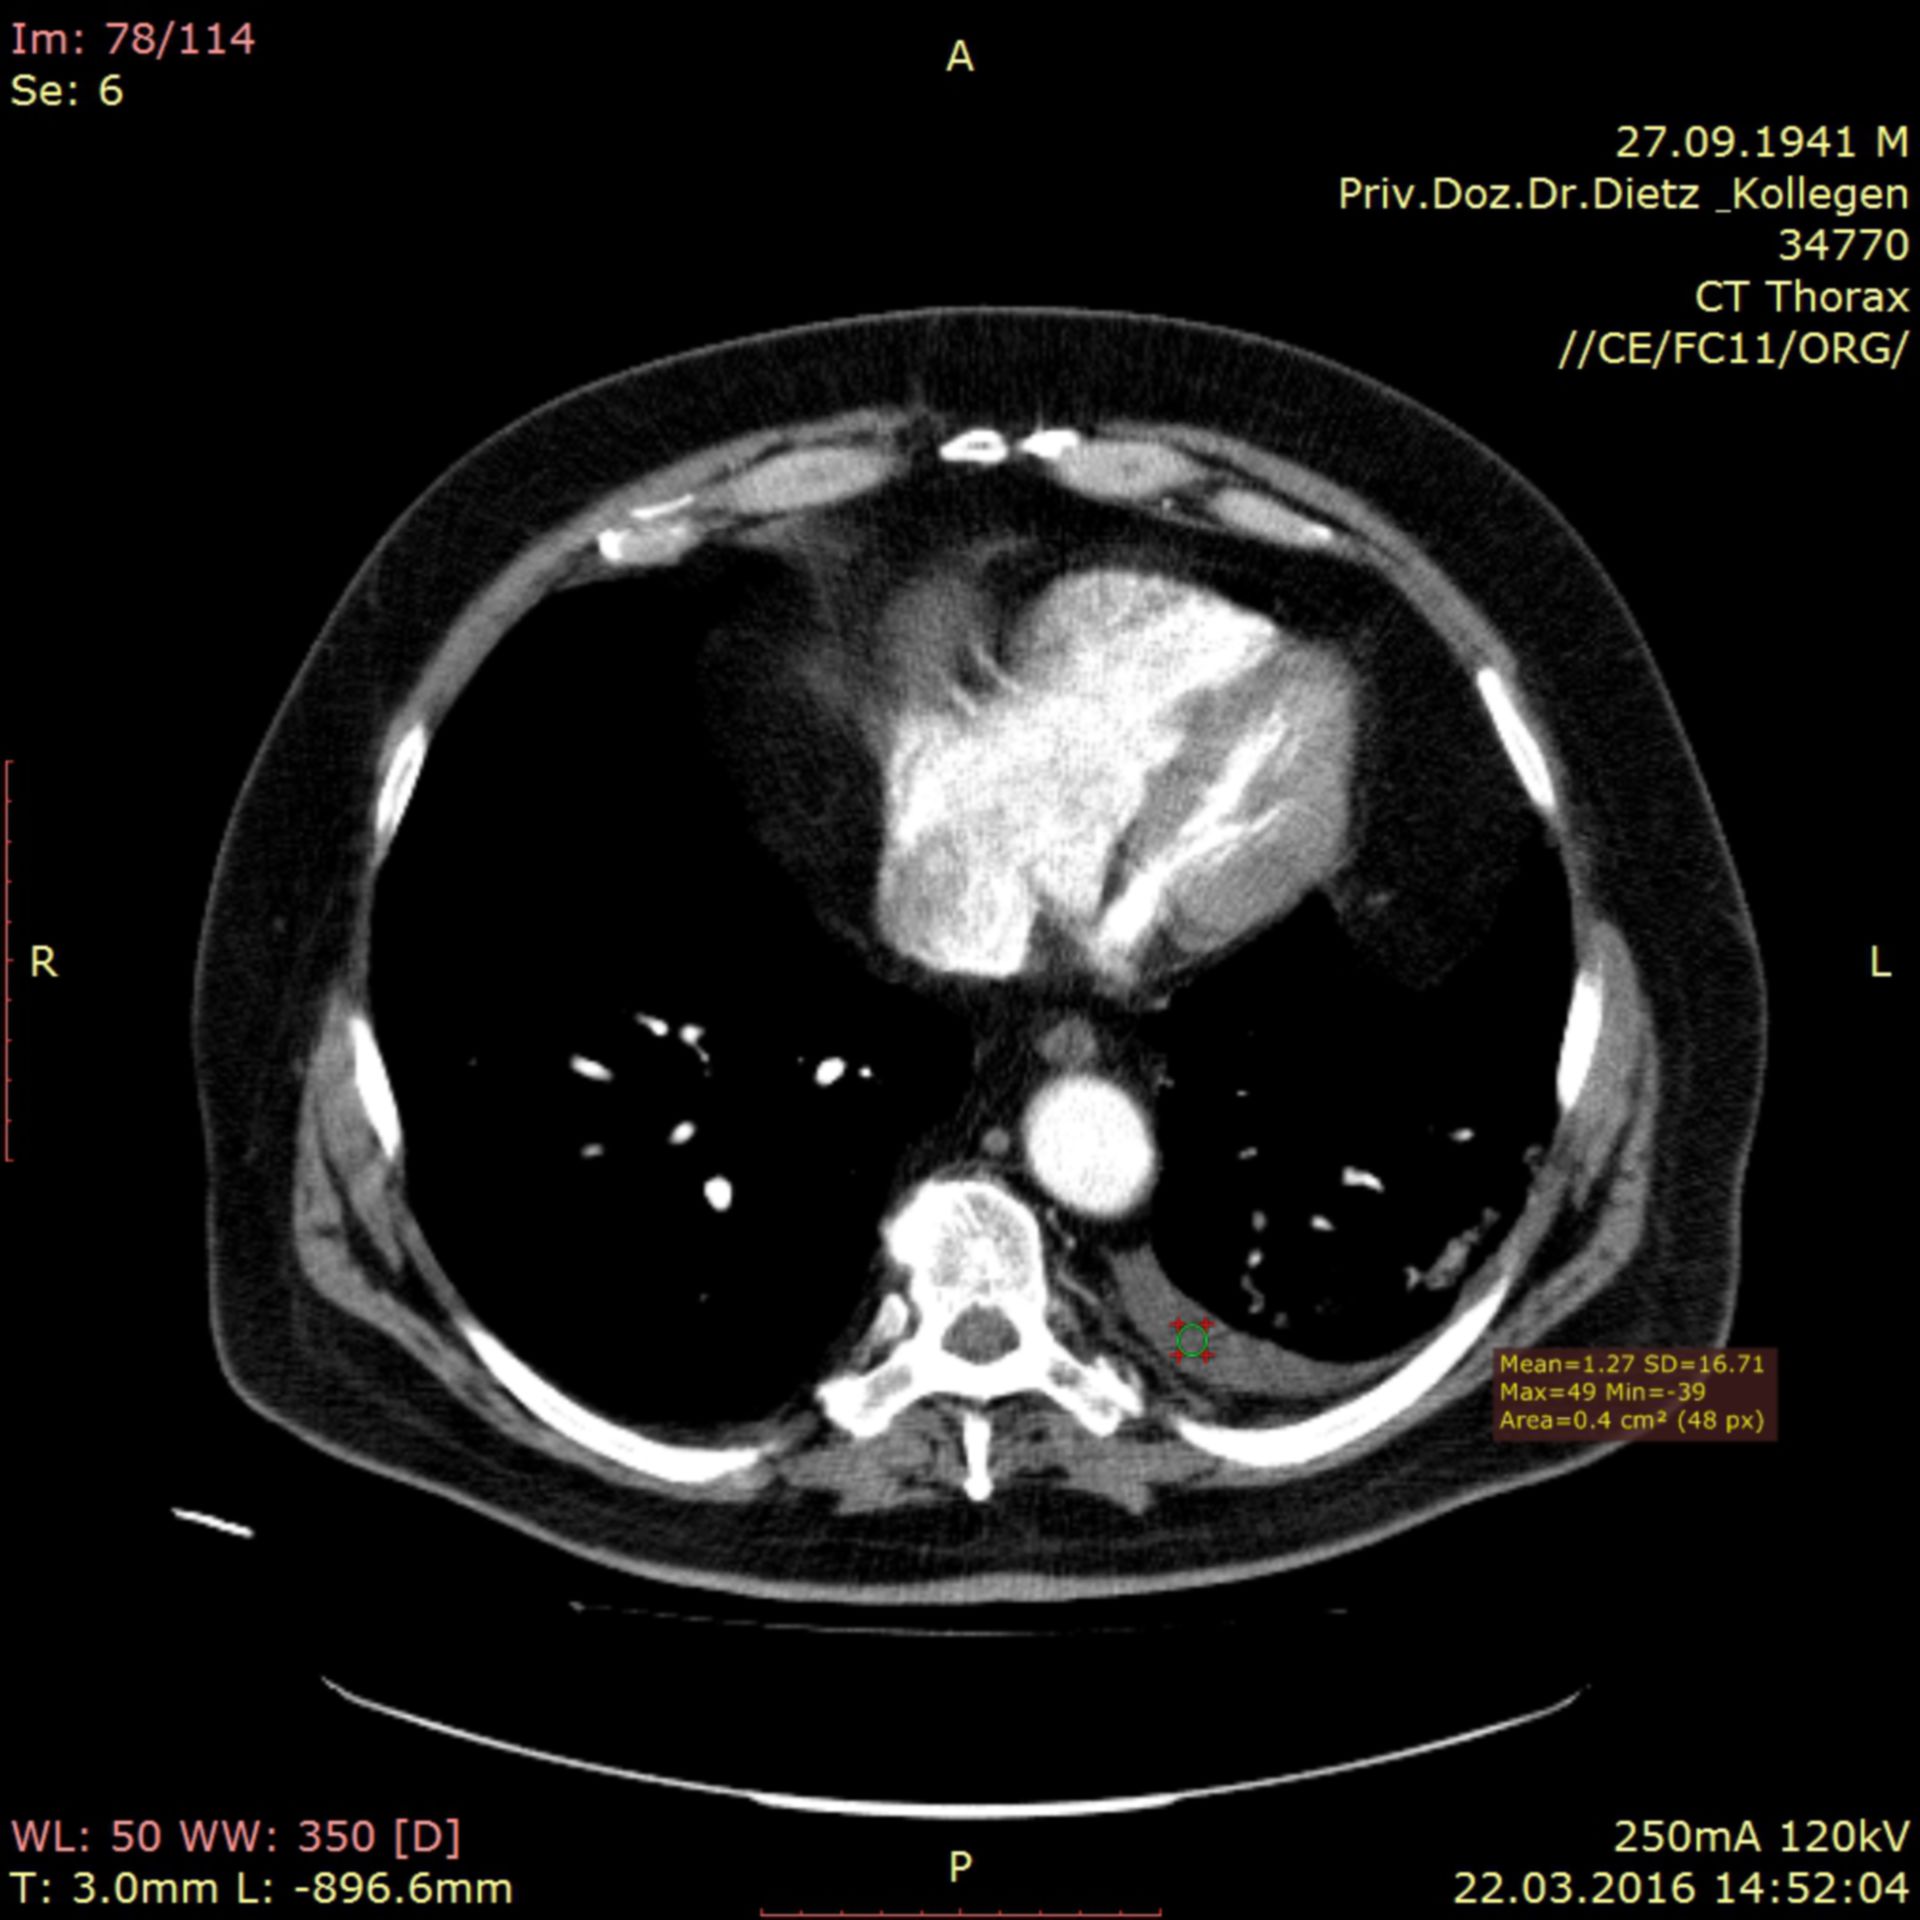 ct_5: CT der Lunge